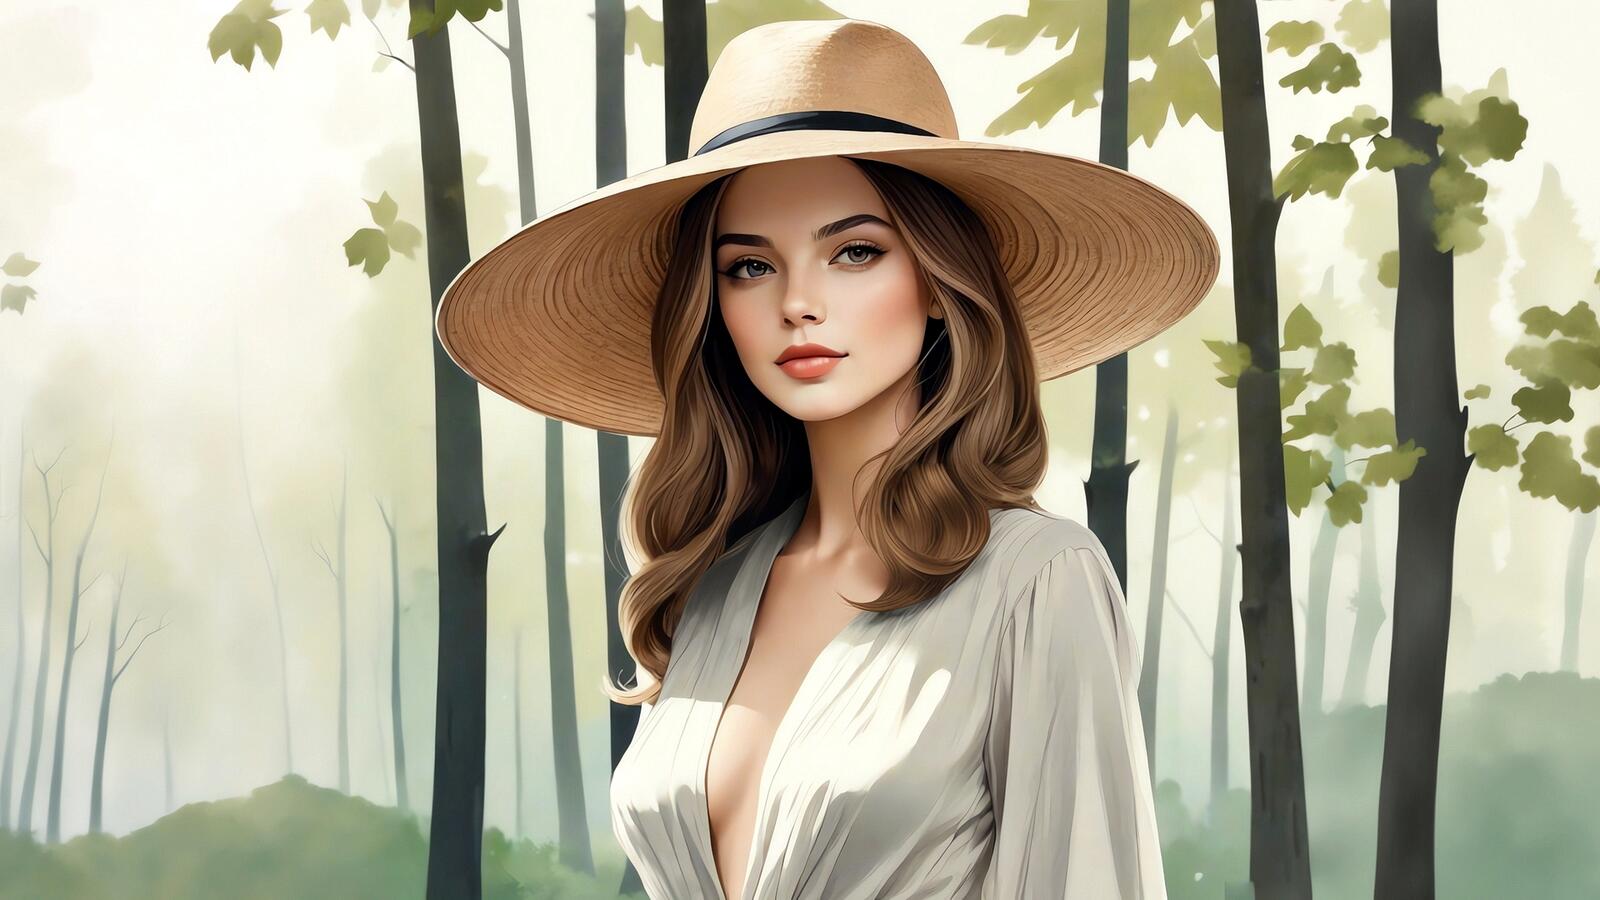 Бесплатное фото Девушка в широкополой шляпе в лесу